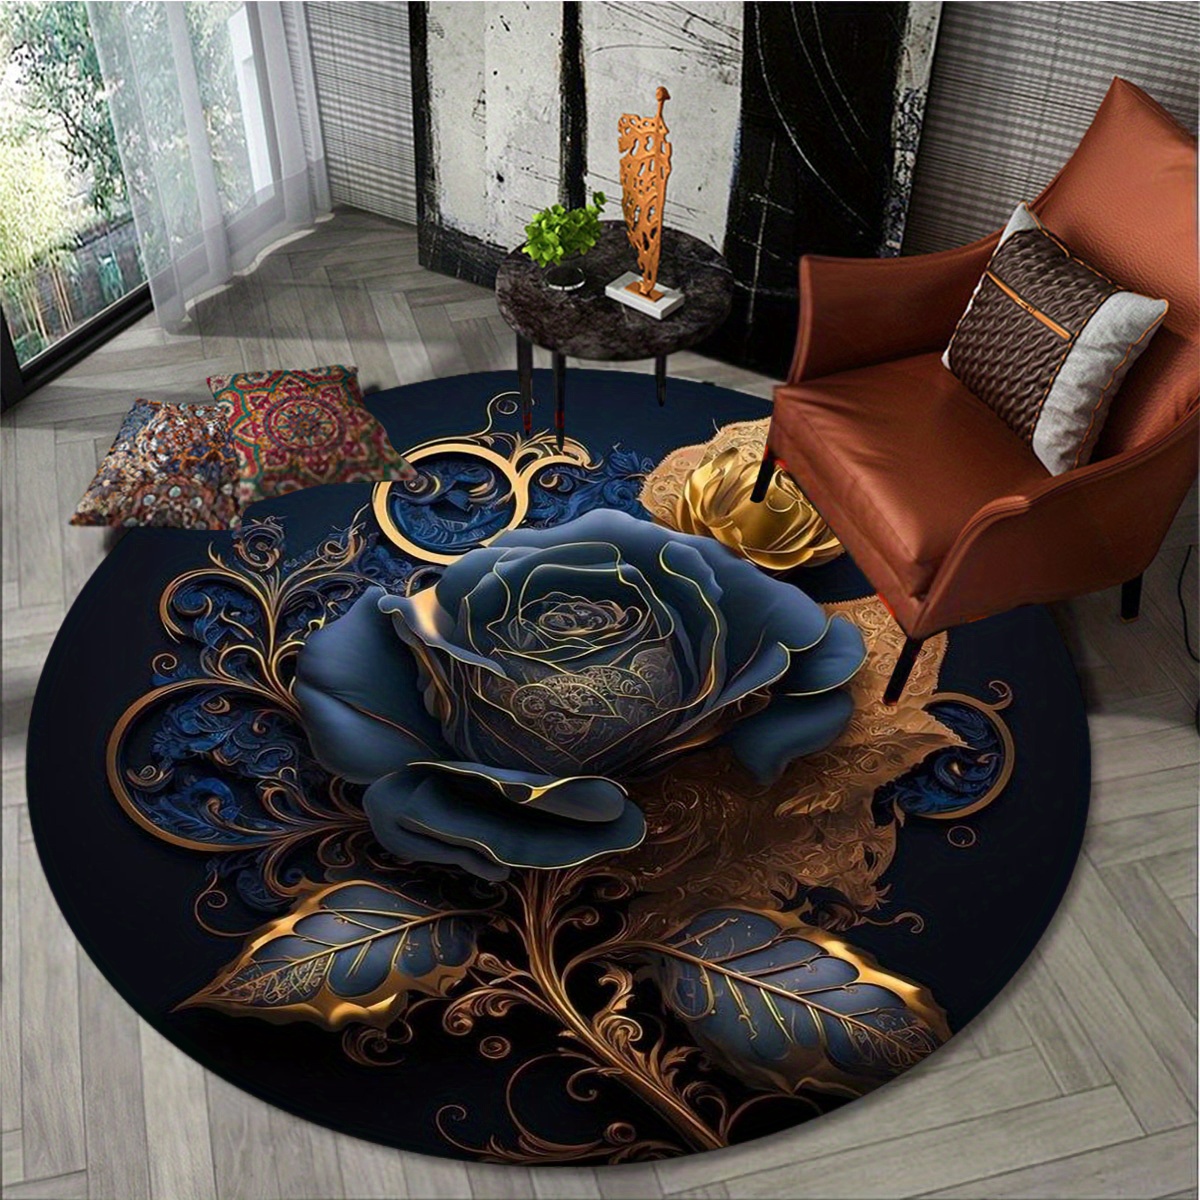 Alfombras redondas a medida, la alfombra que necesitas en casa • AO tienda  online alfombras